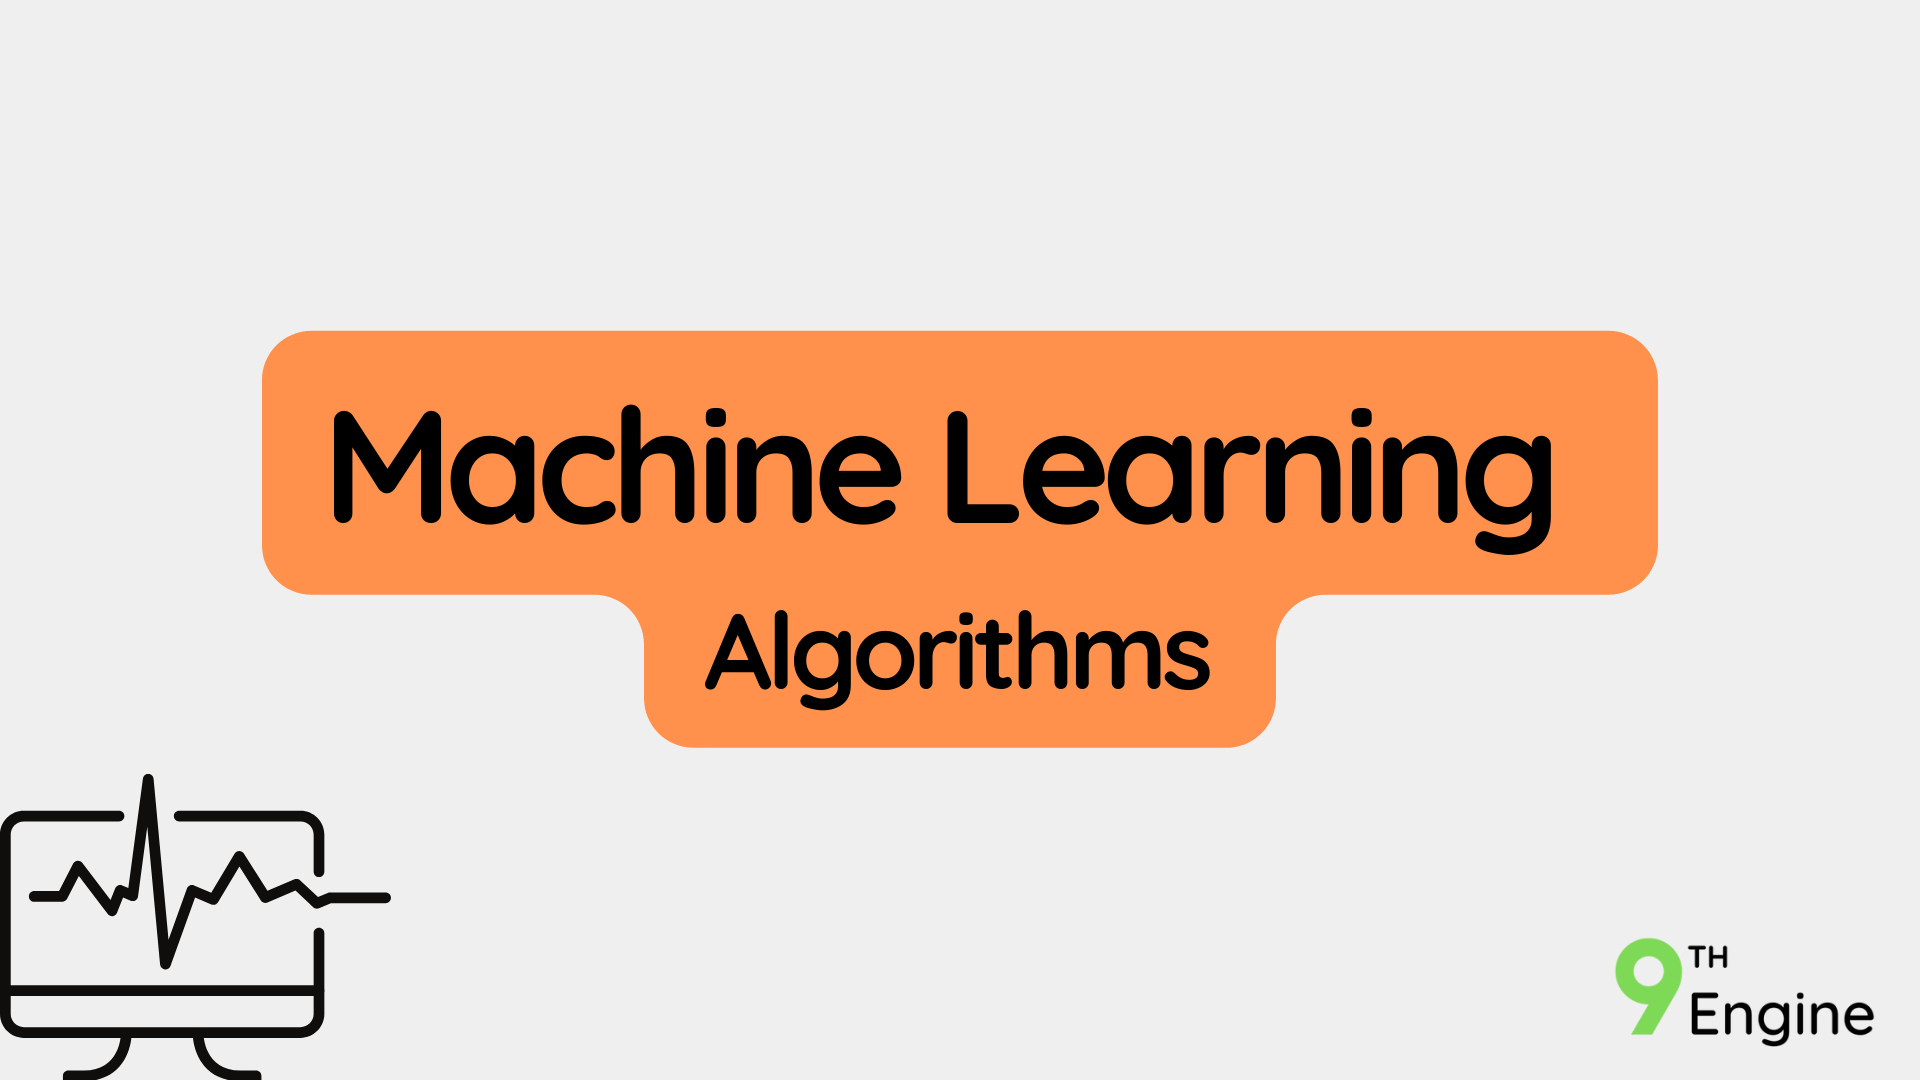 Machine Learning Algorithms - NE